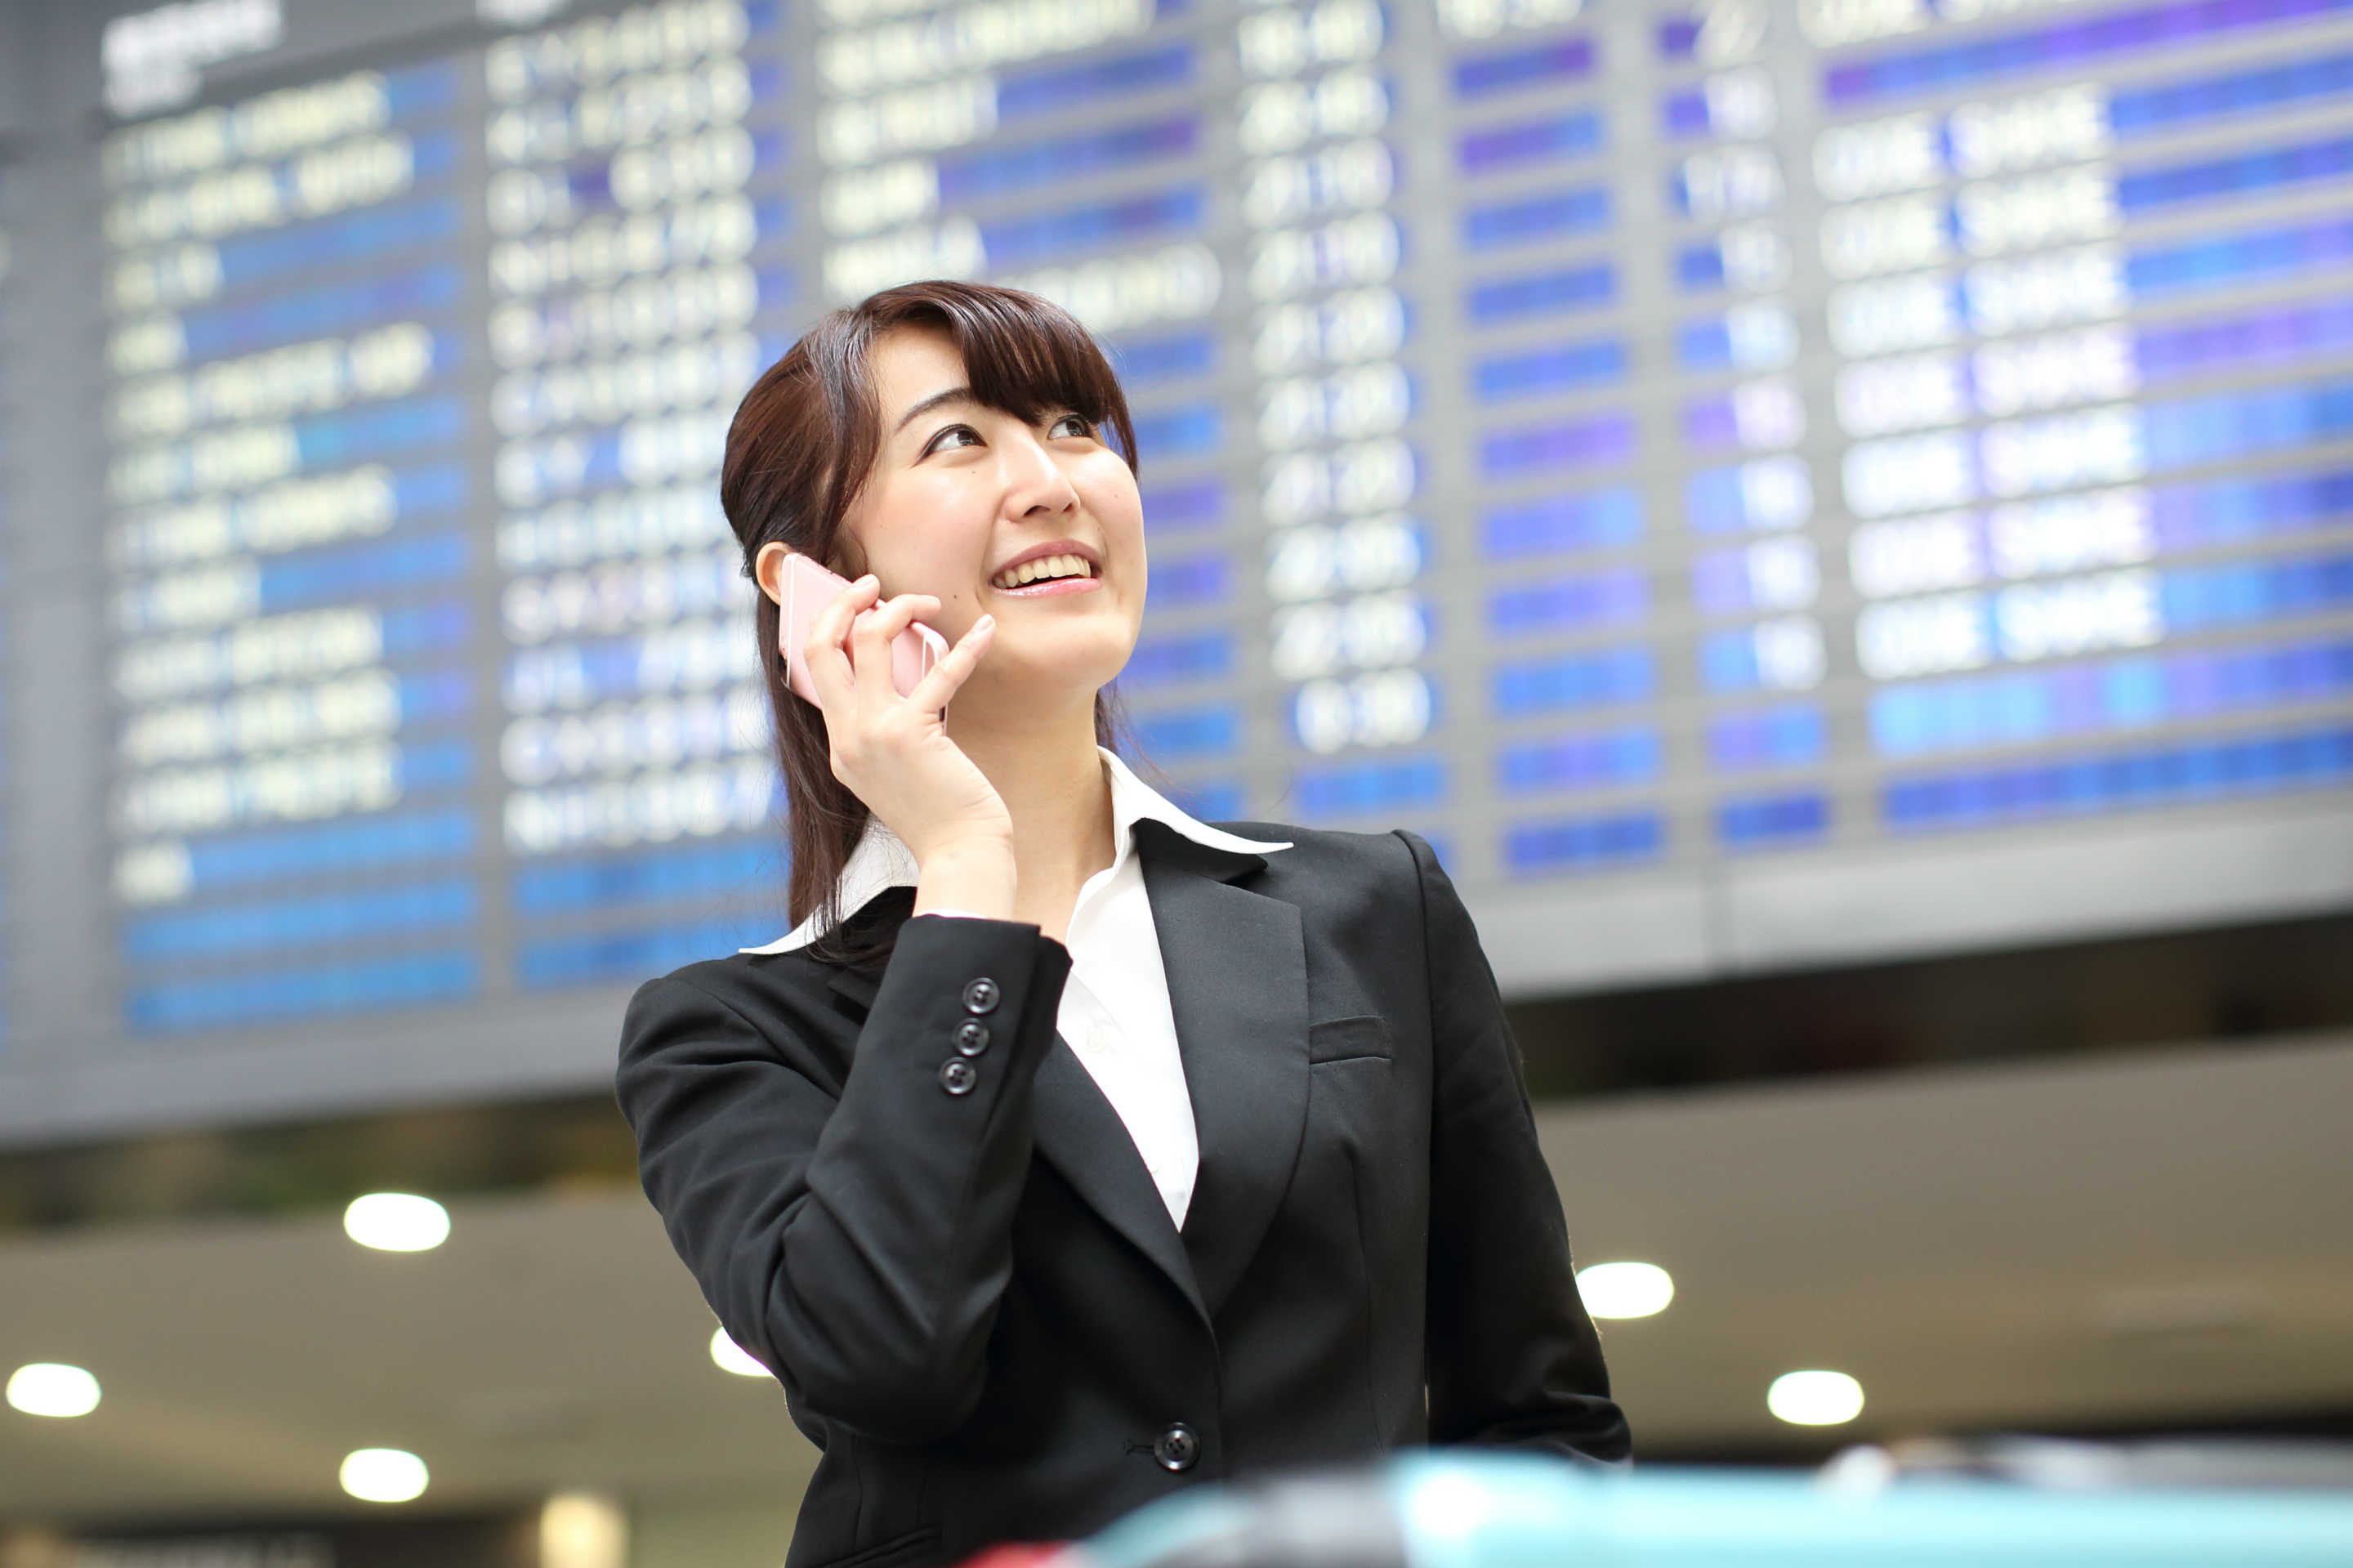 成田空港女性添乗員の電話風景